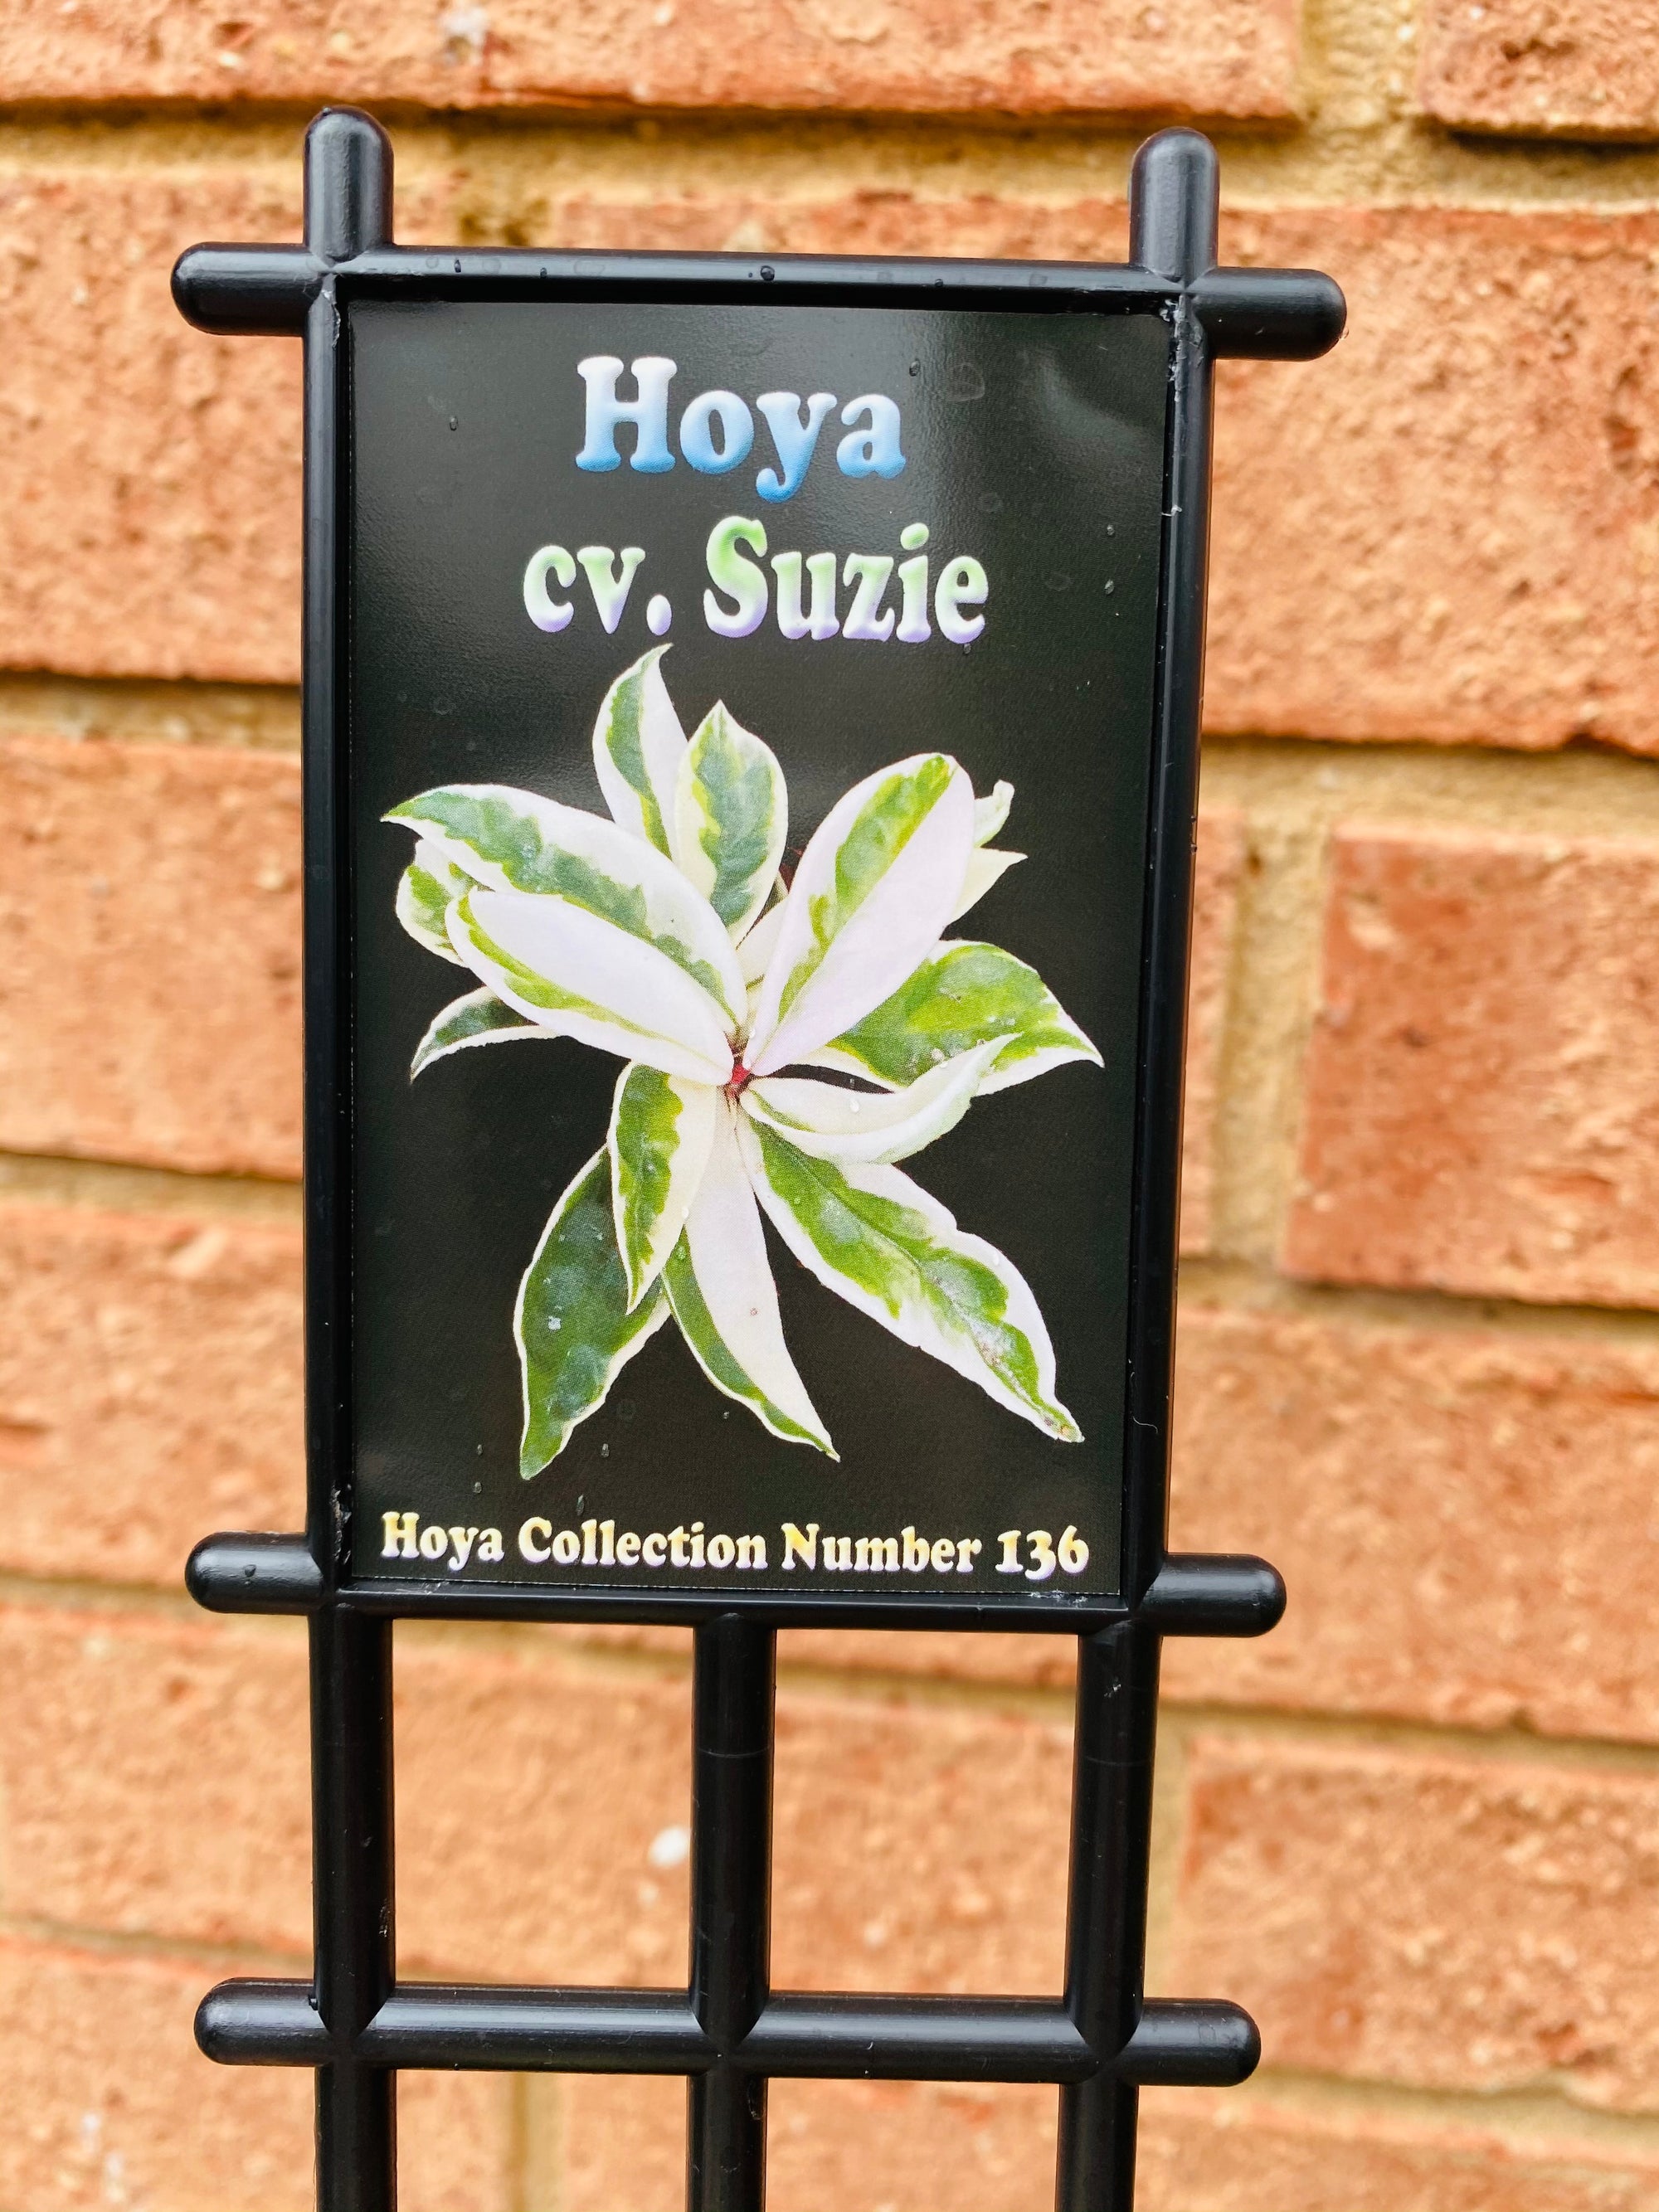 Hoya - cv. Suzie Collection No. 136